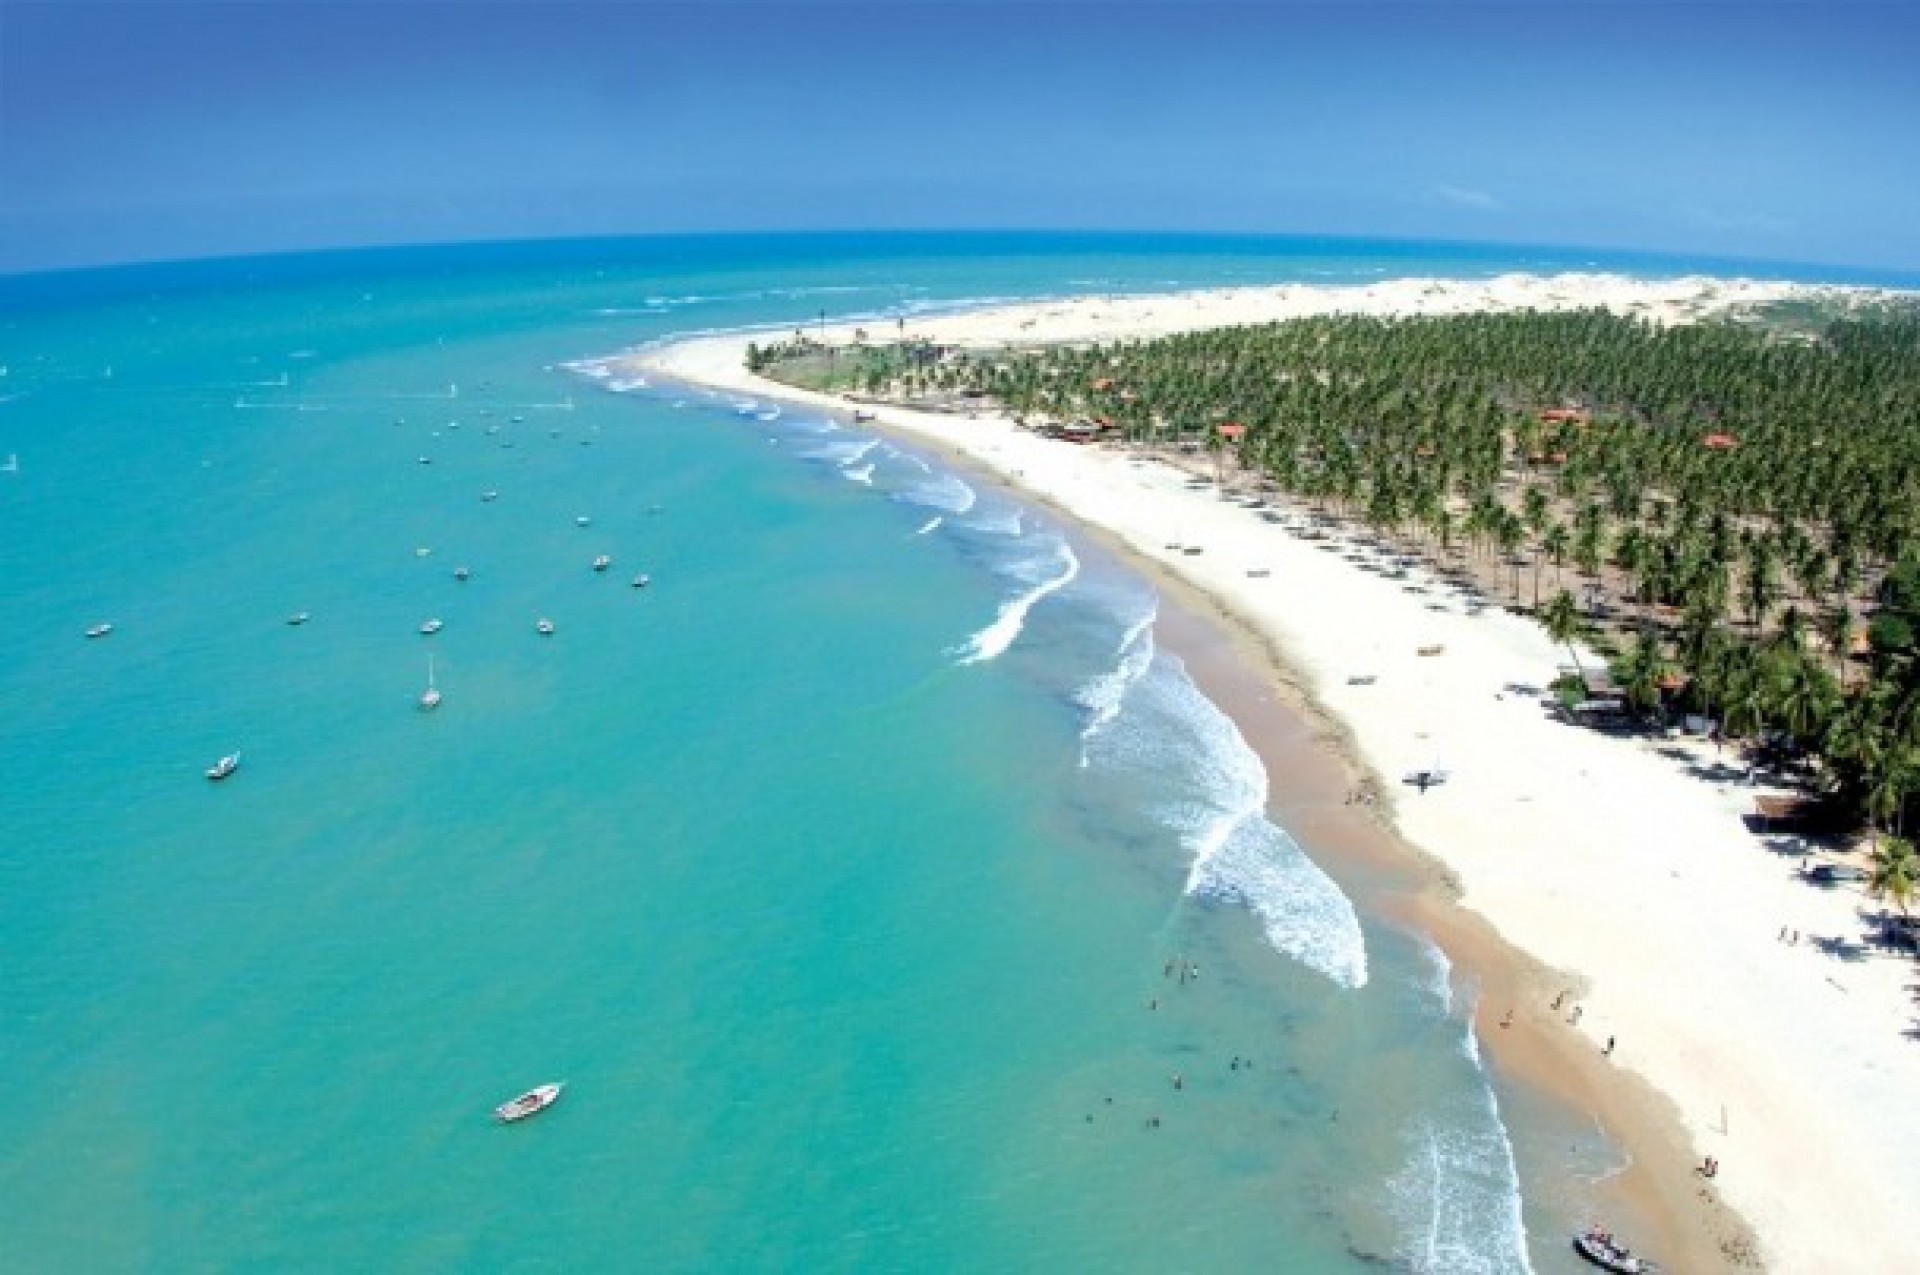 Moradores e setor turístico da paradisíaca praia de Icaraizinho de Amontada vêm sofrendo com falhas constantes no abastecimento elétrico na região (Foto: Divulgação)